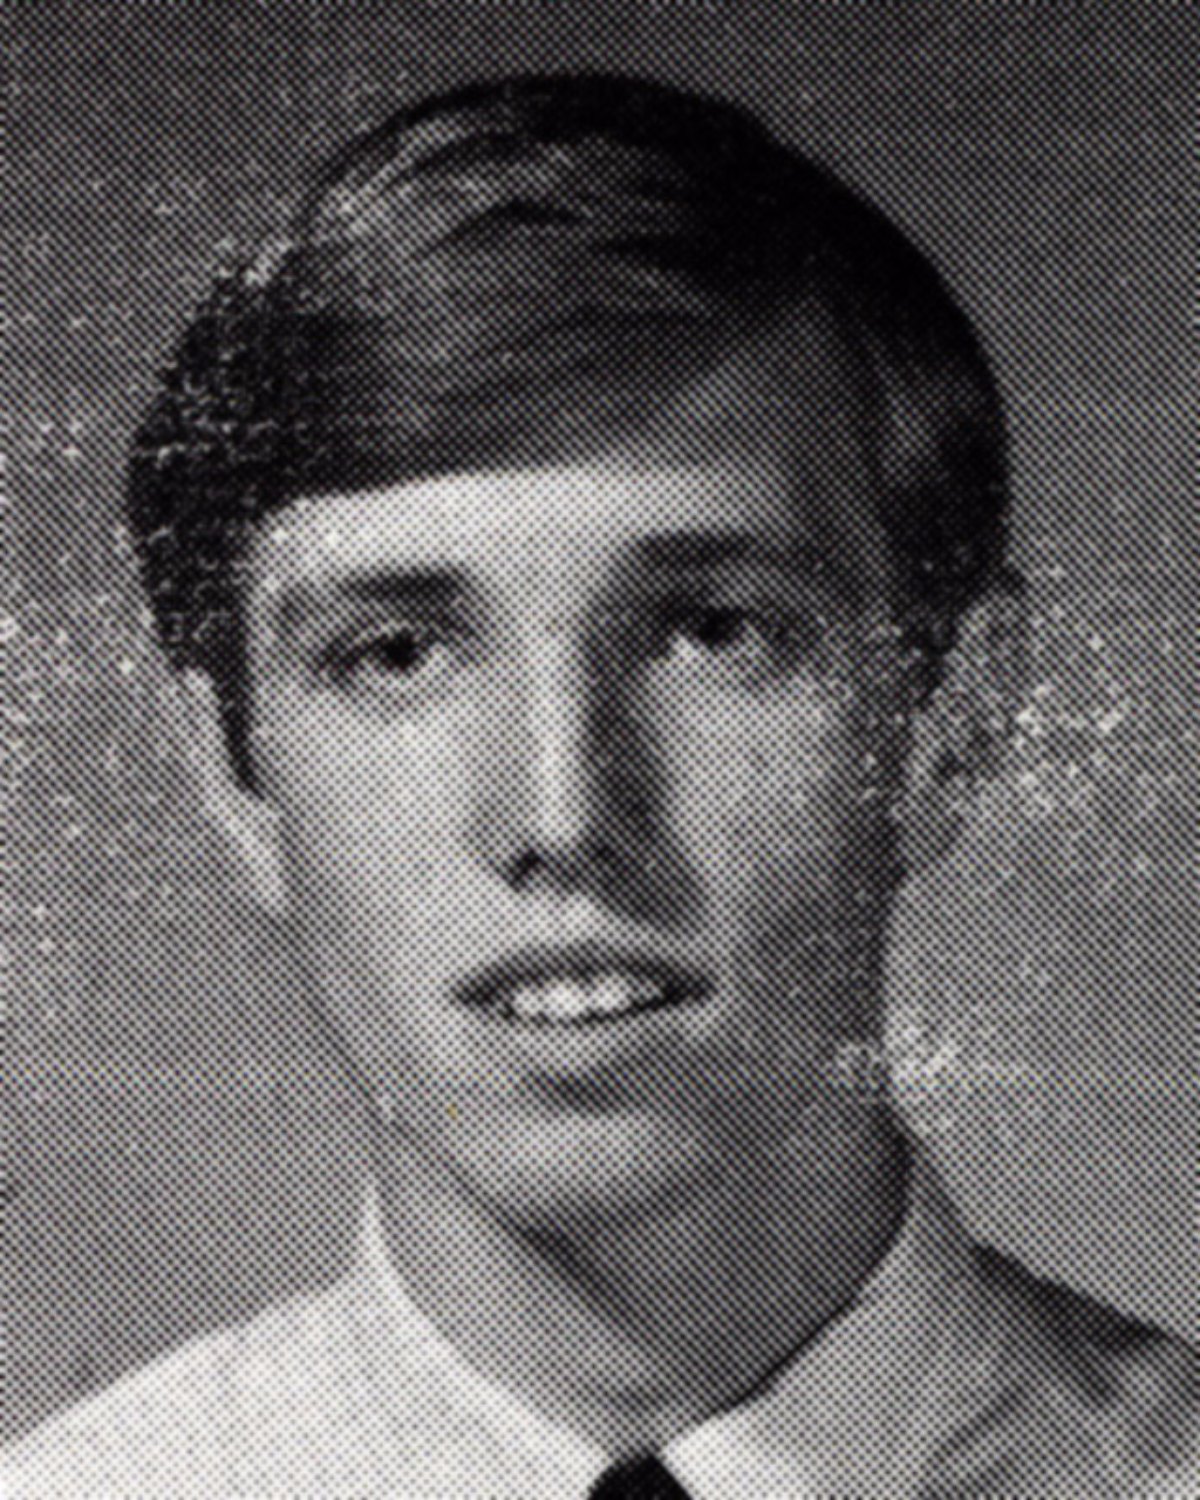 Tom Petty in seiner Jugend